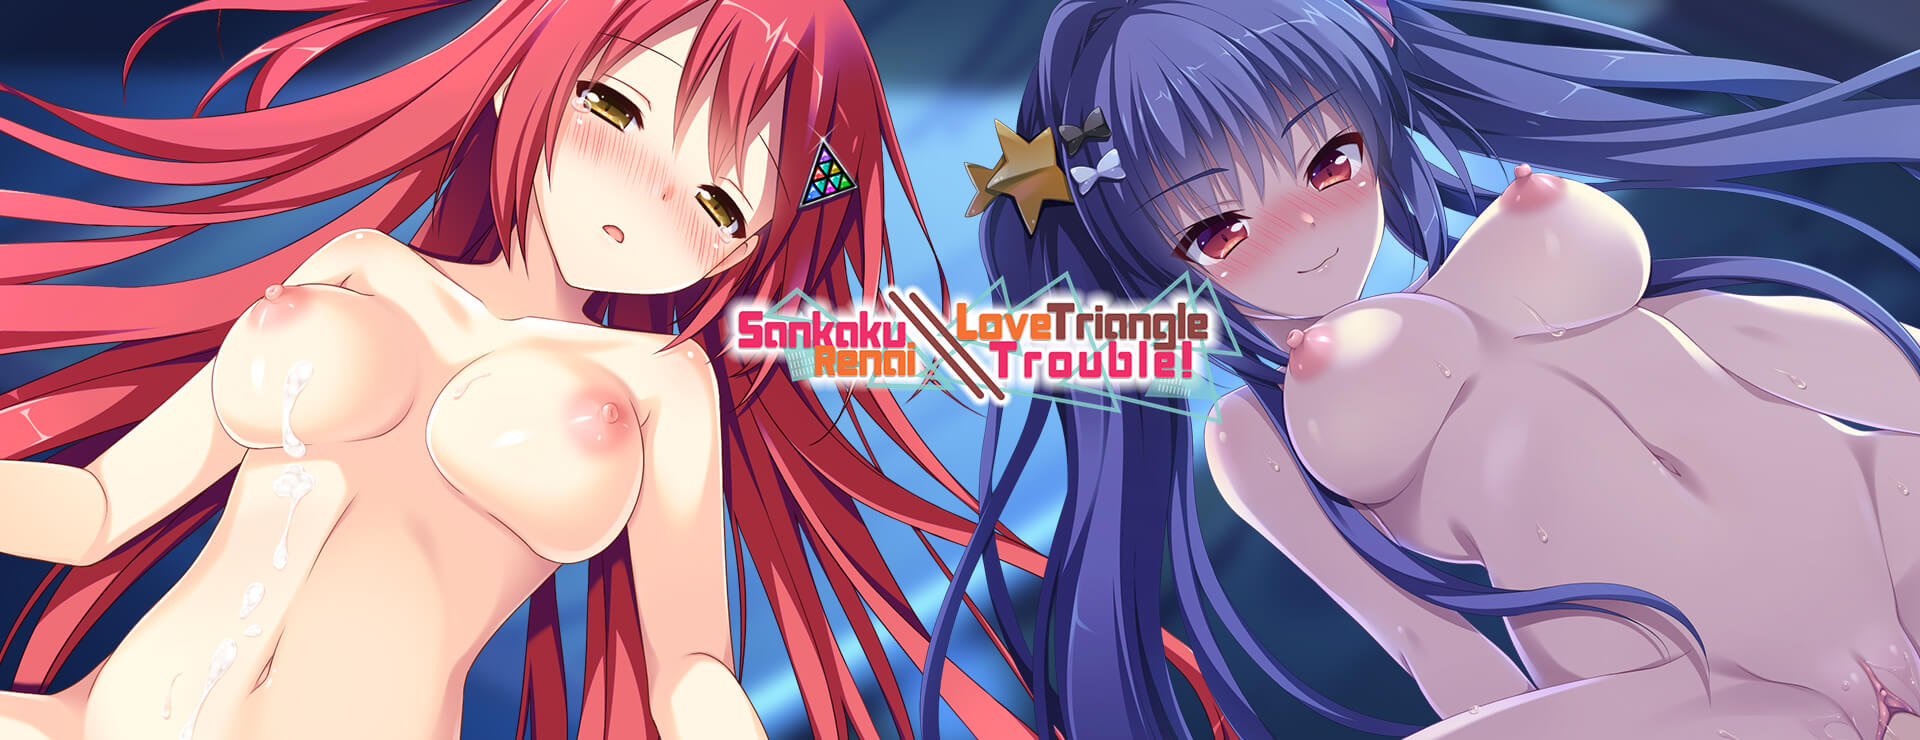 Sankaku Renai - Love Triangle Troubles - Powieść wizualna Gra